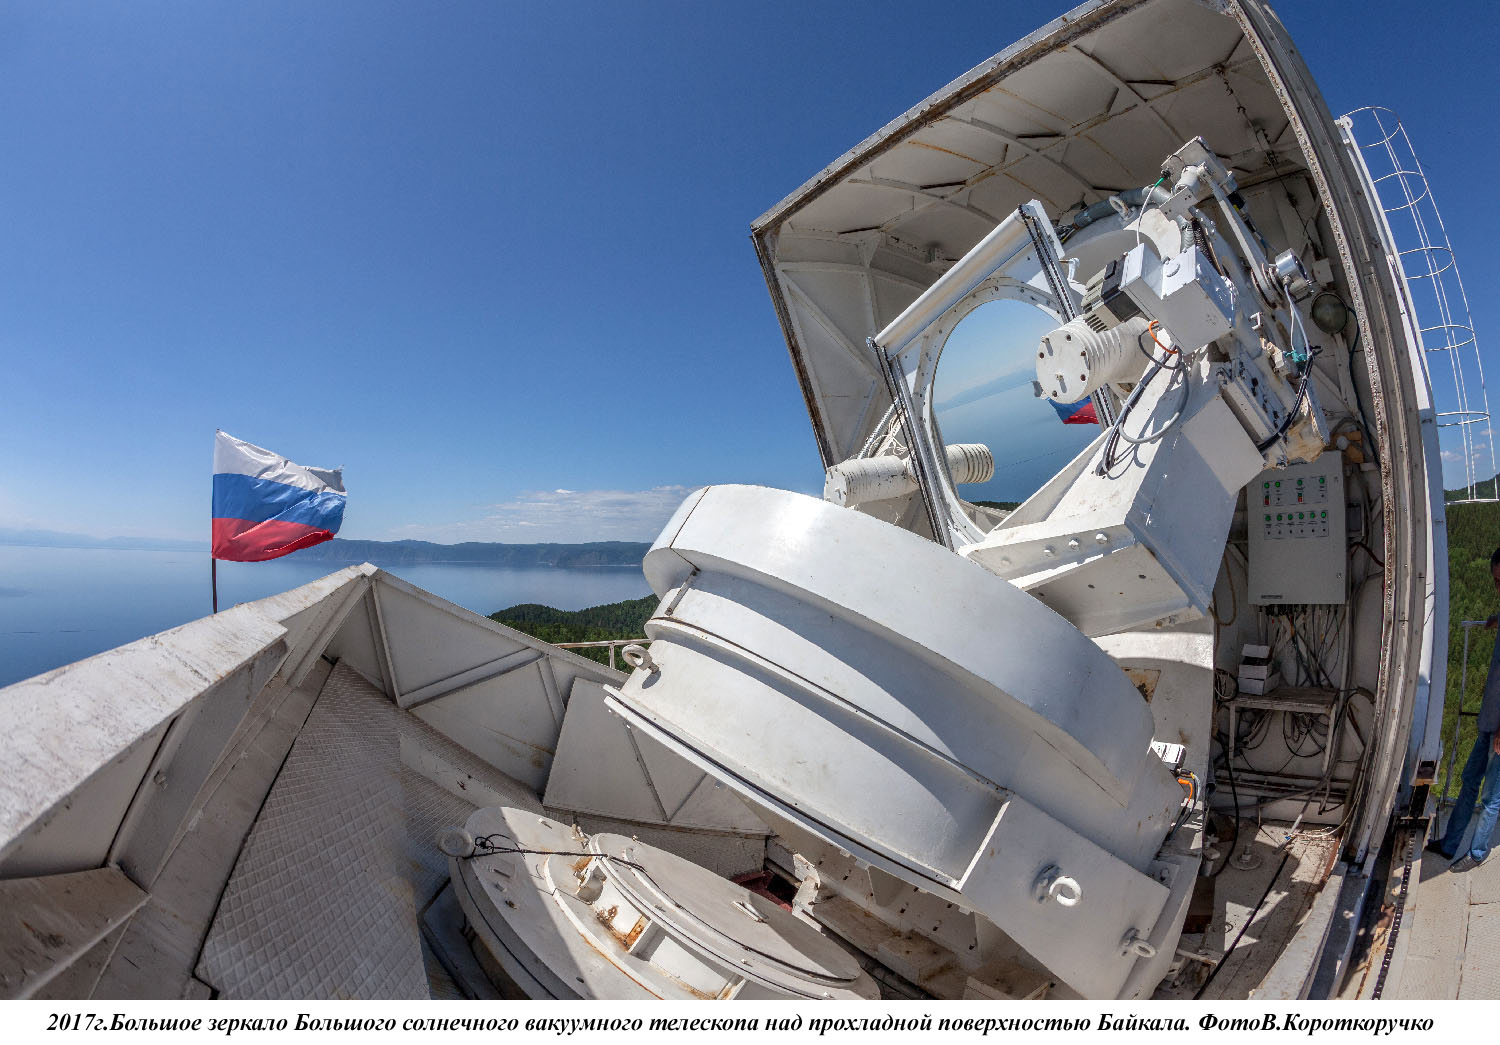 Байкальская астрофизическая обсерватория и Солнечная обсерватория Big Bear Lake (Калифорния) обменялись знаками дружбы